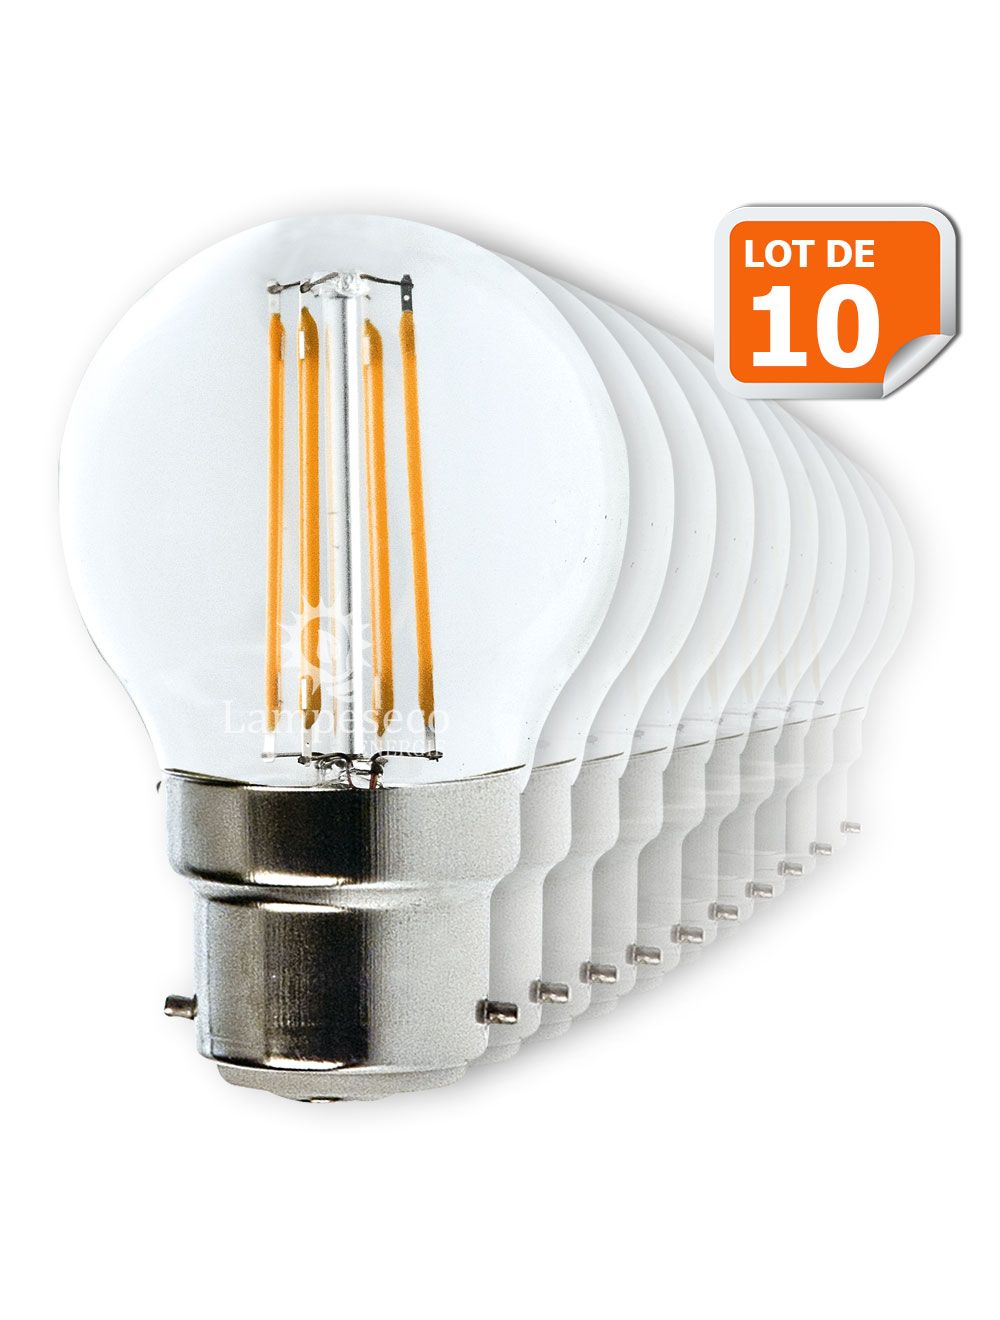 Lot de 10 Ampoules Led Filament Culot B22 4 Watt (éq 42 watts) Blanc Chaud